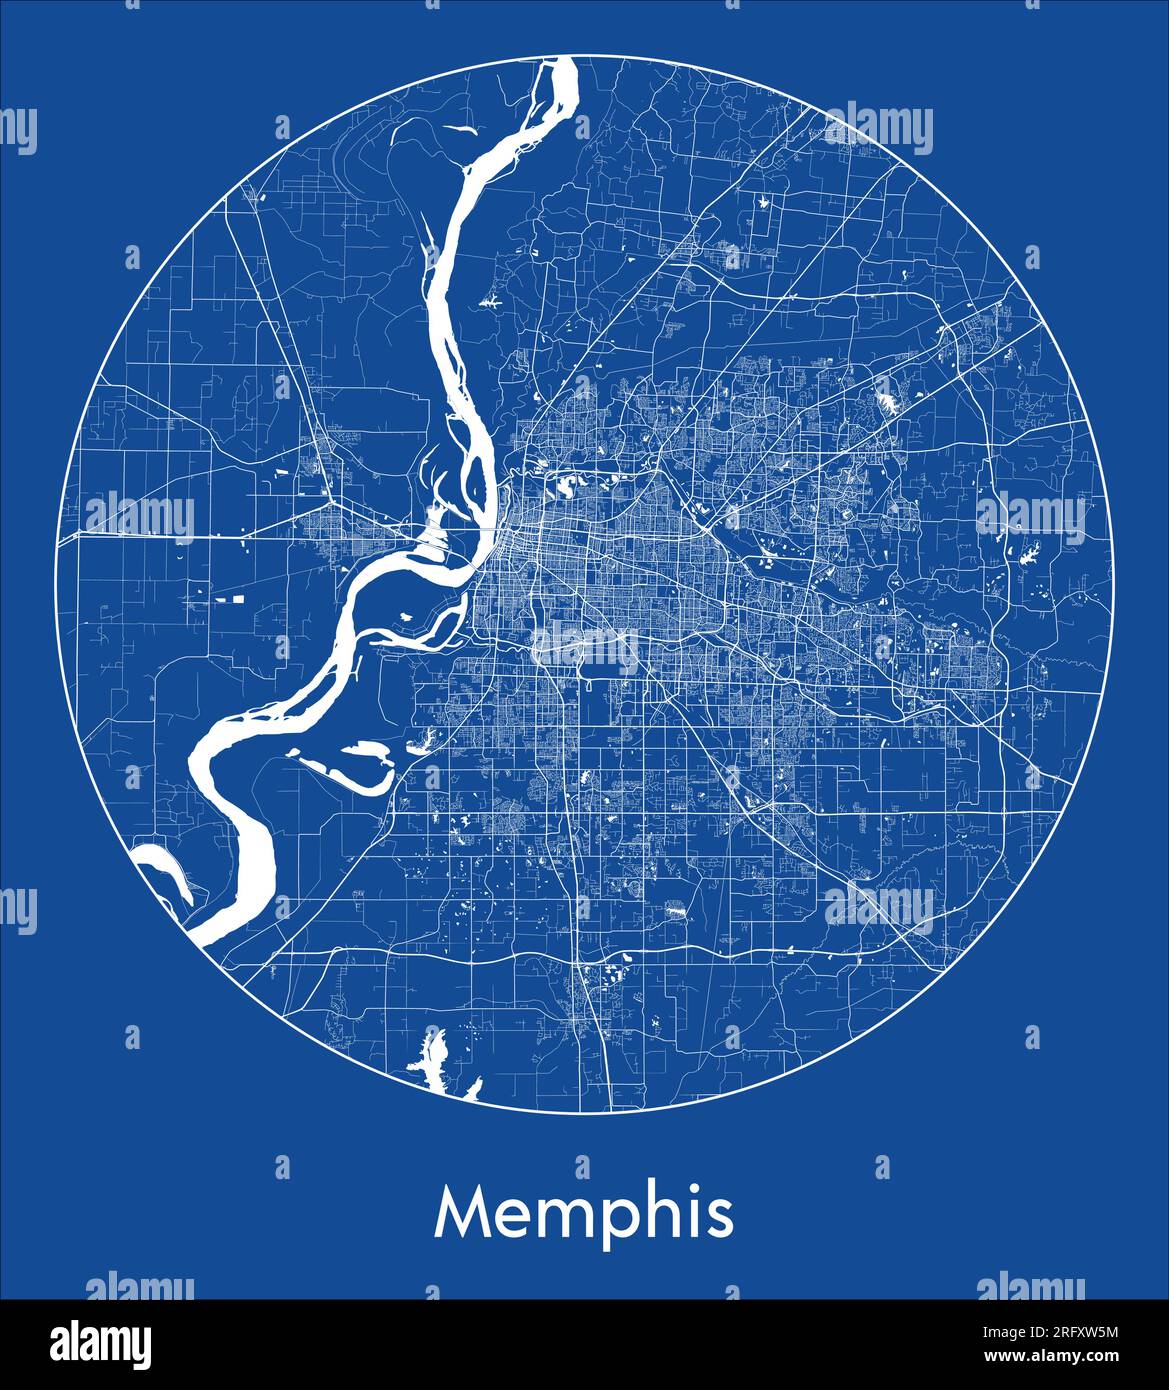 Mapa de la ciudad Delhi India Asia azul impresión circular círculo ilustración vectorial Ilustración del Vector